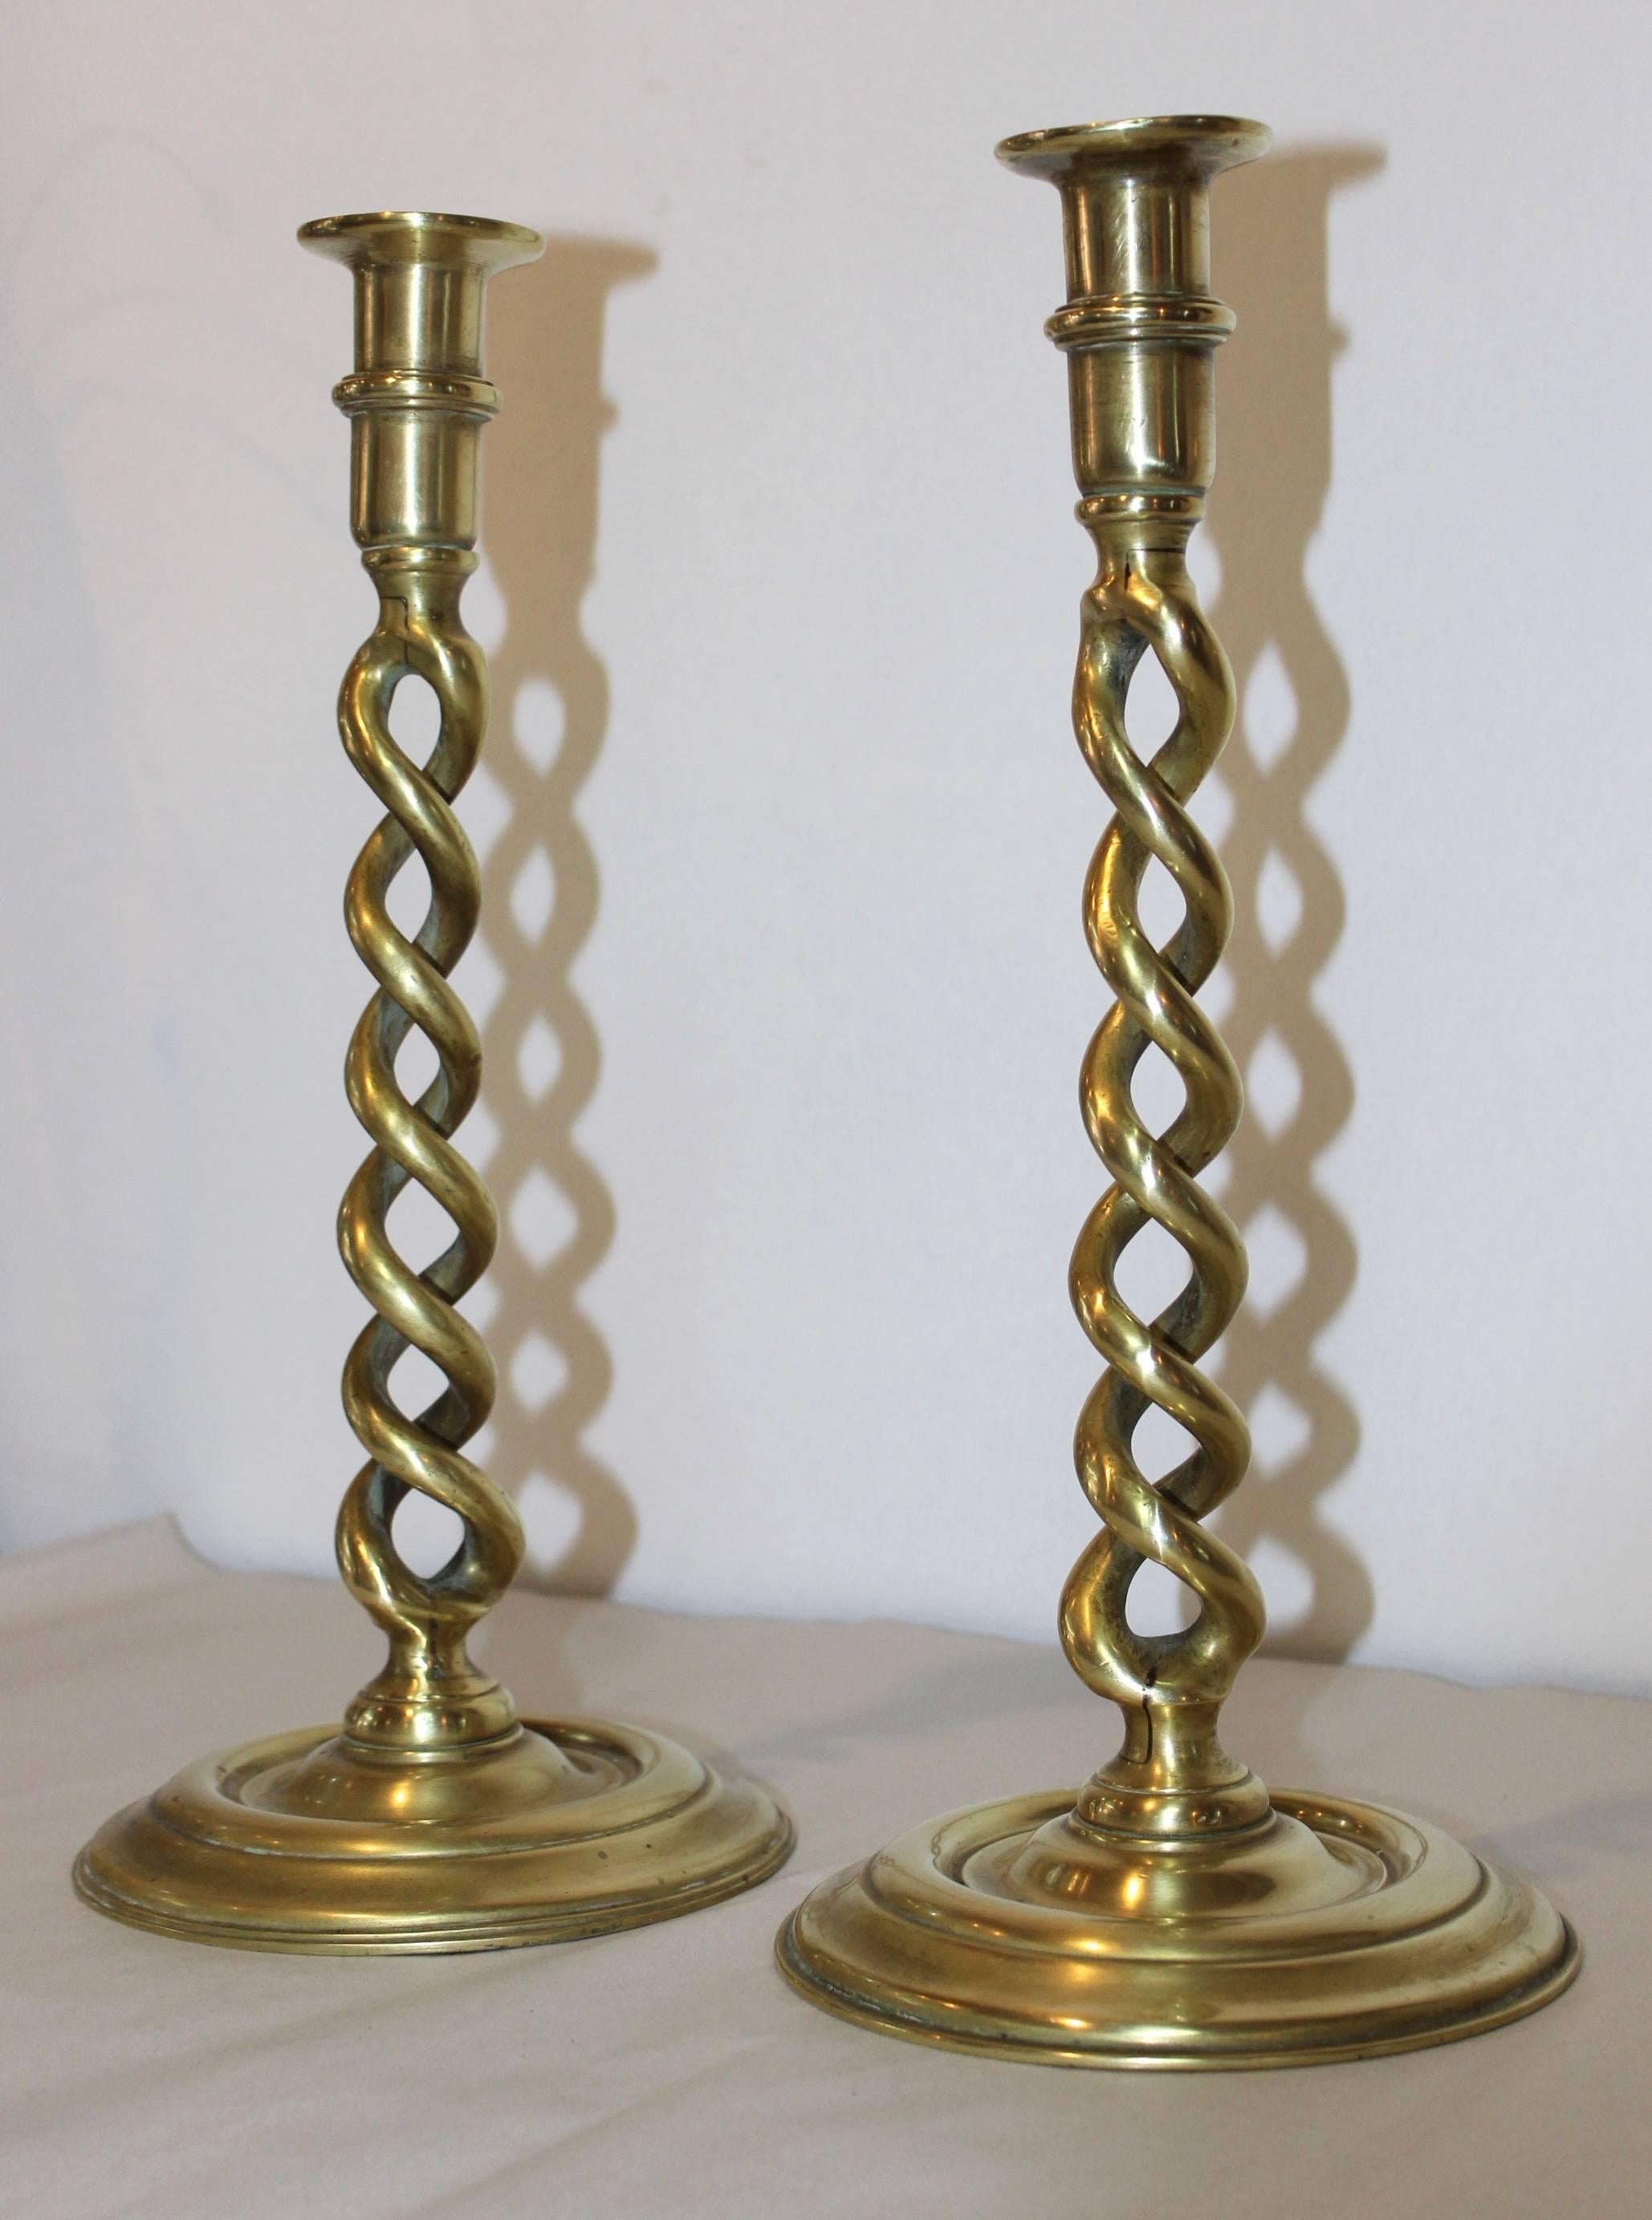 1940s English brass spiral twist candlesticks.